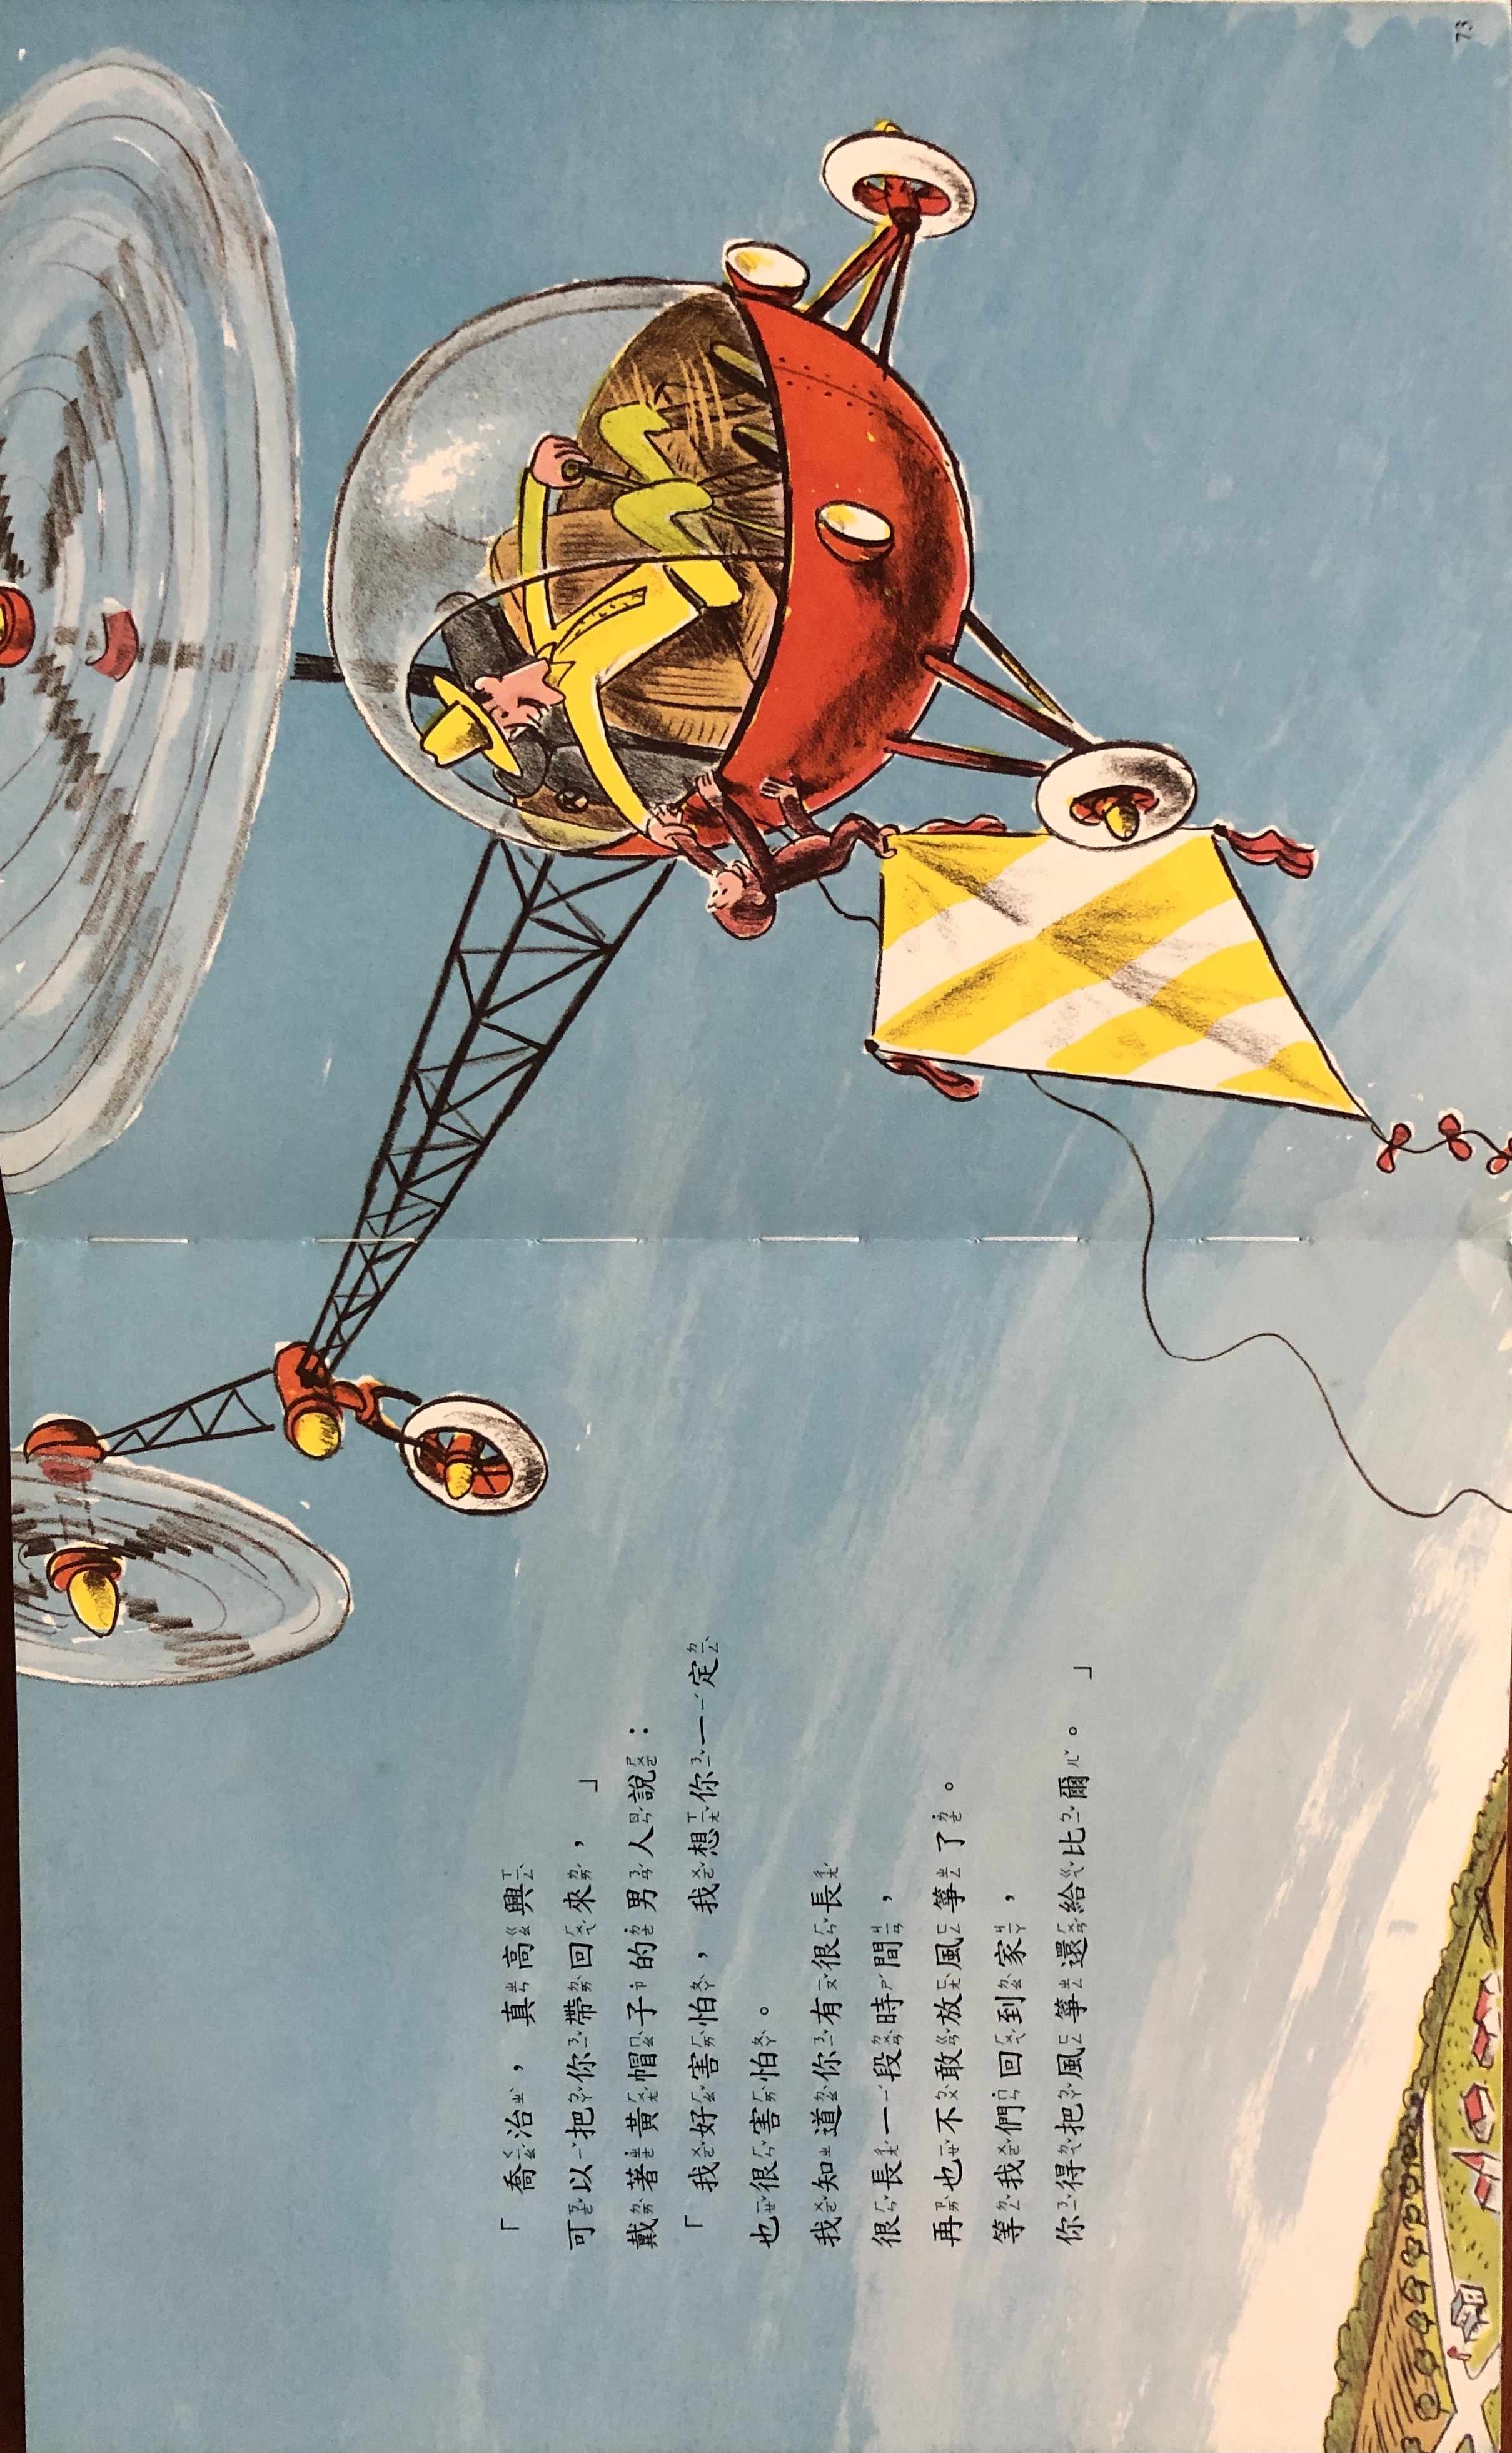 戴著黃色帽子的男人在喬治跟著風箏一起飛到天上時，開著直昇機來救他。圖片取自《好奇猴喬治放風箏》內頁。